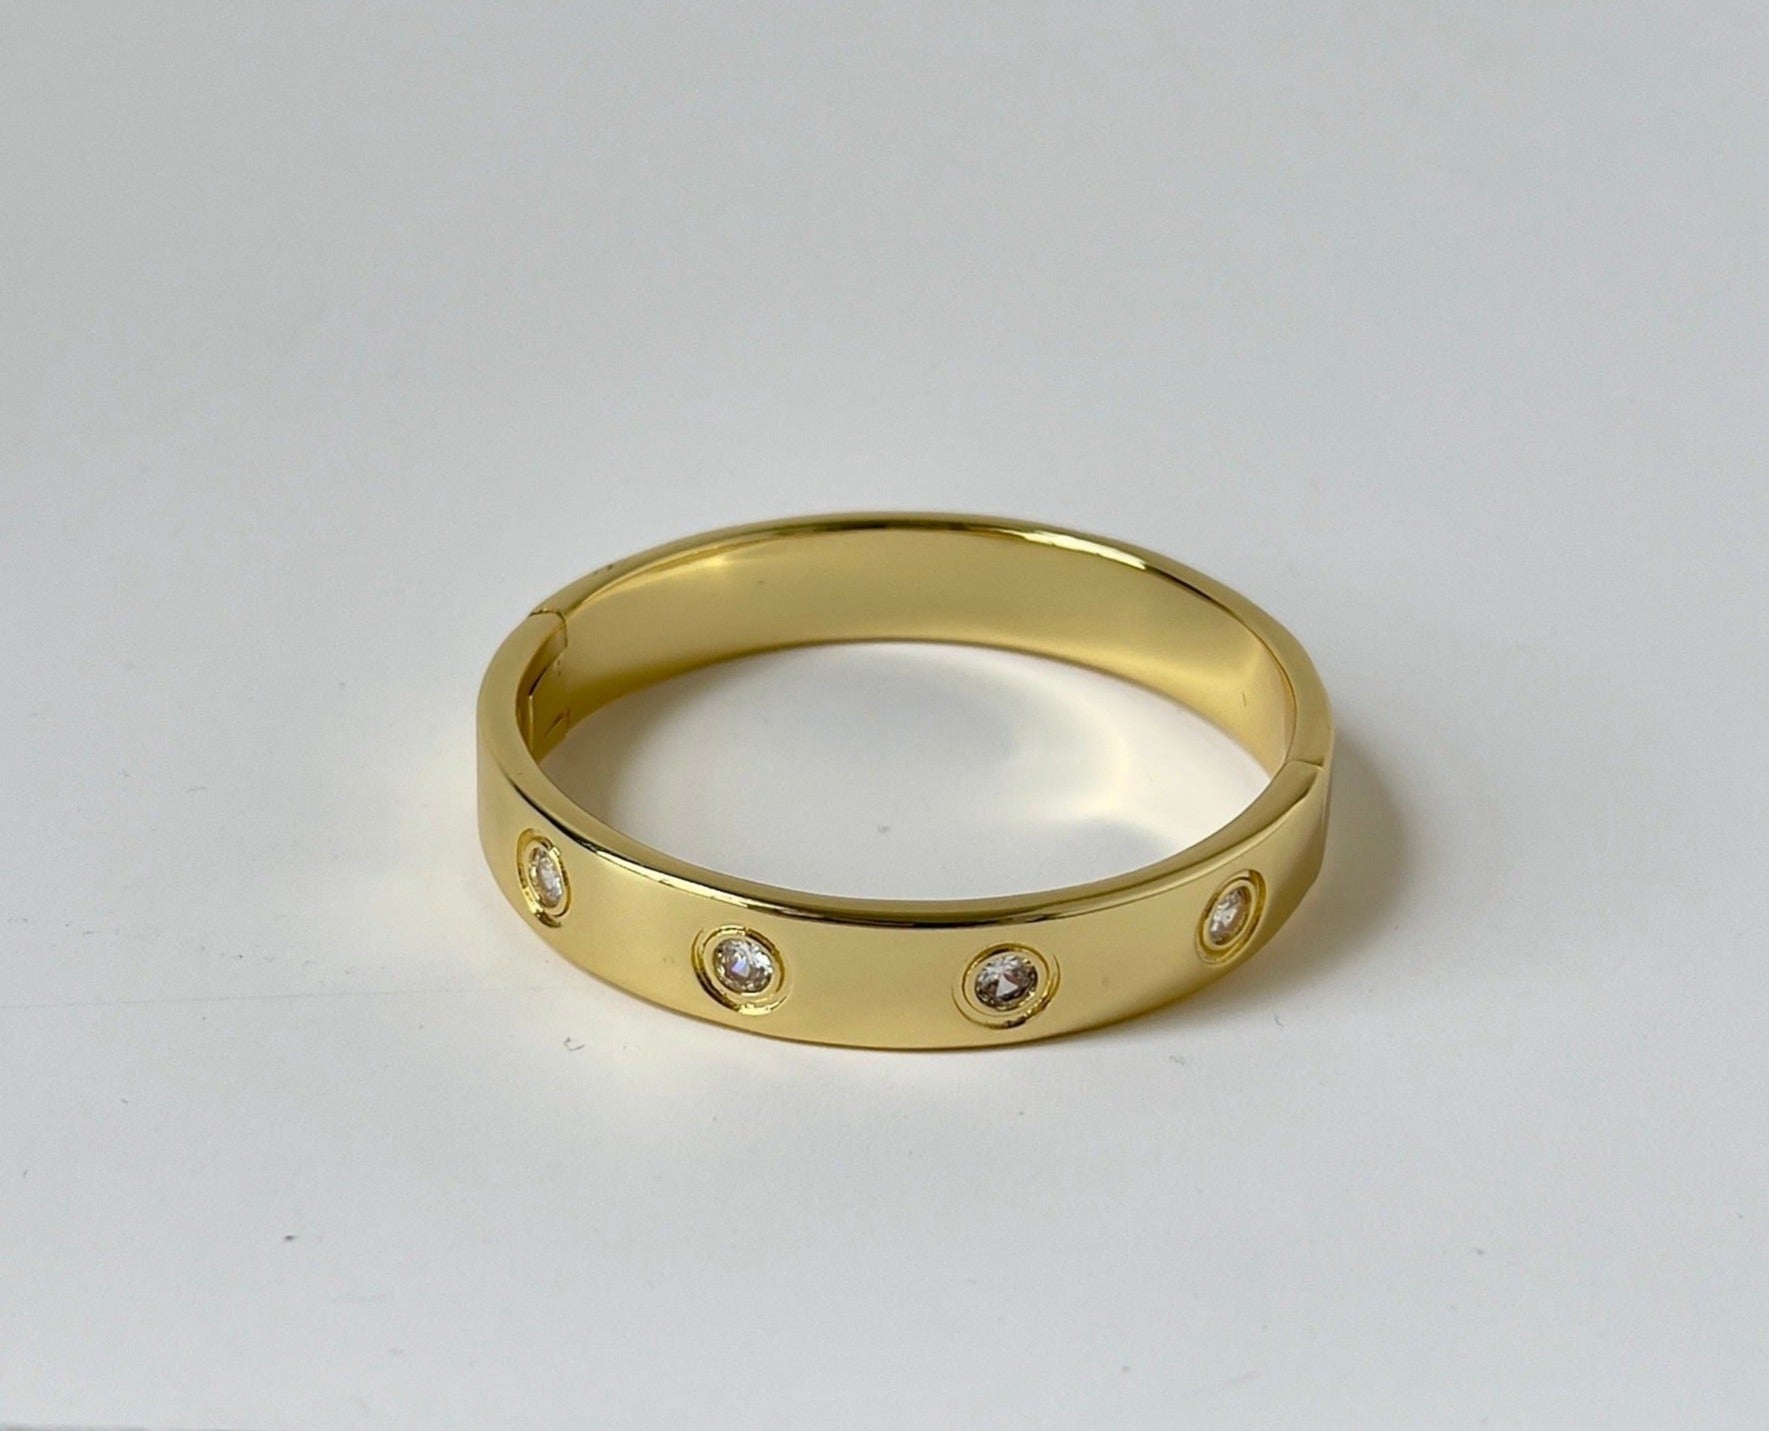 locked bracelet in gold